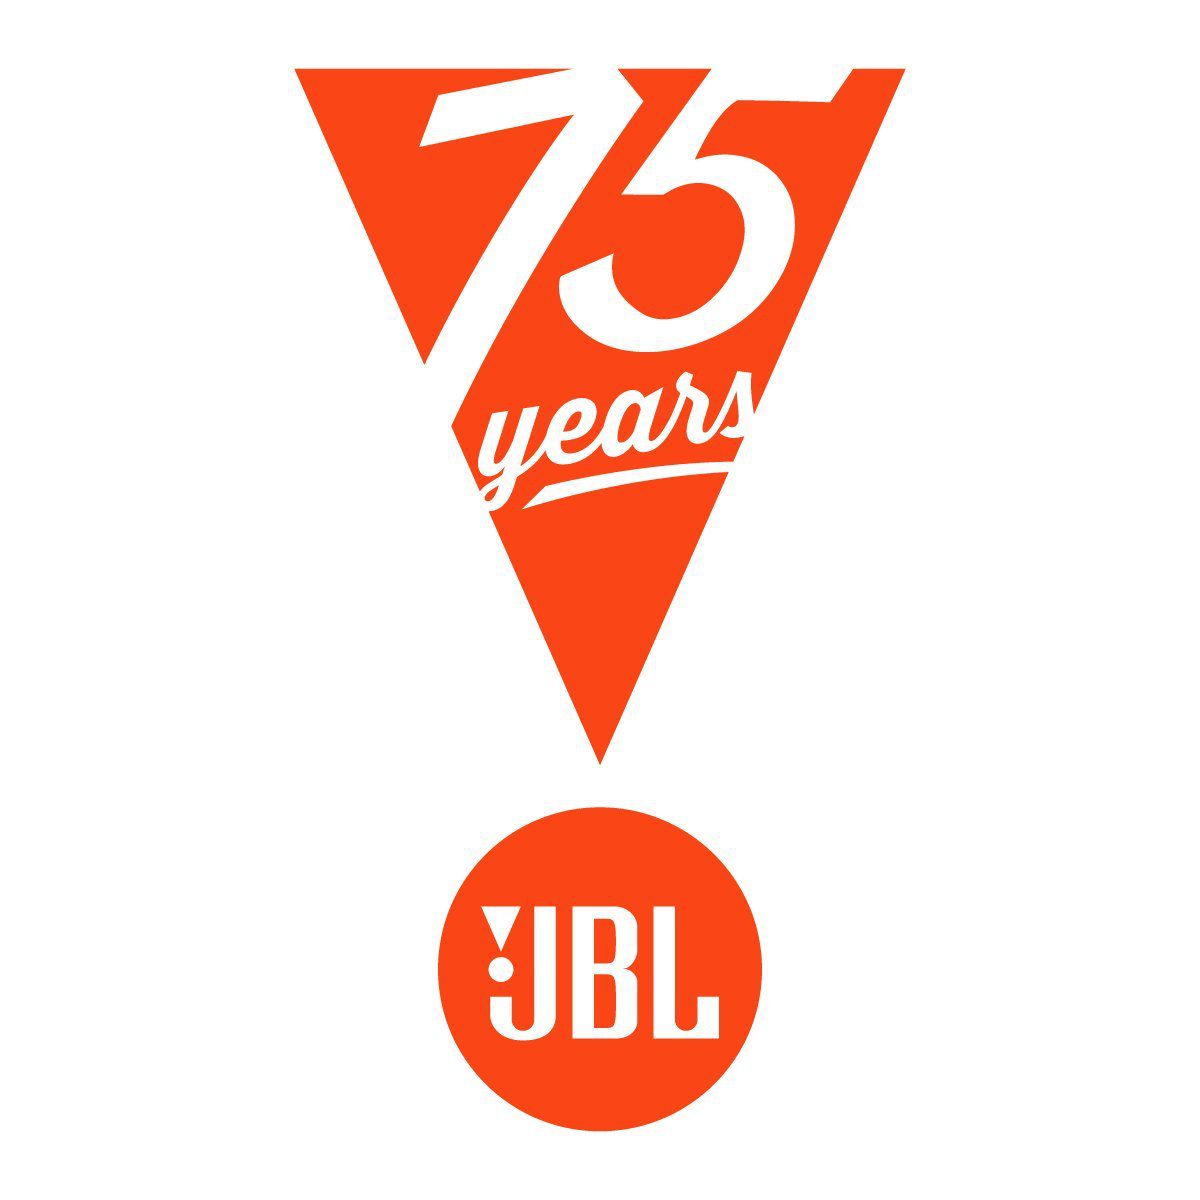 JBL kündigt eine neue Produktlinie mit einem Bluetooth-Lautsprecher und TWS-Kopfhörern an der Spitze an 38